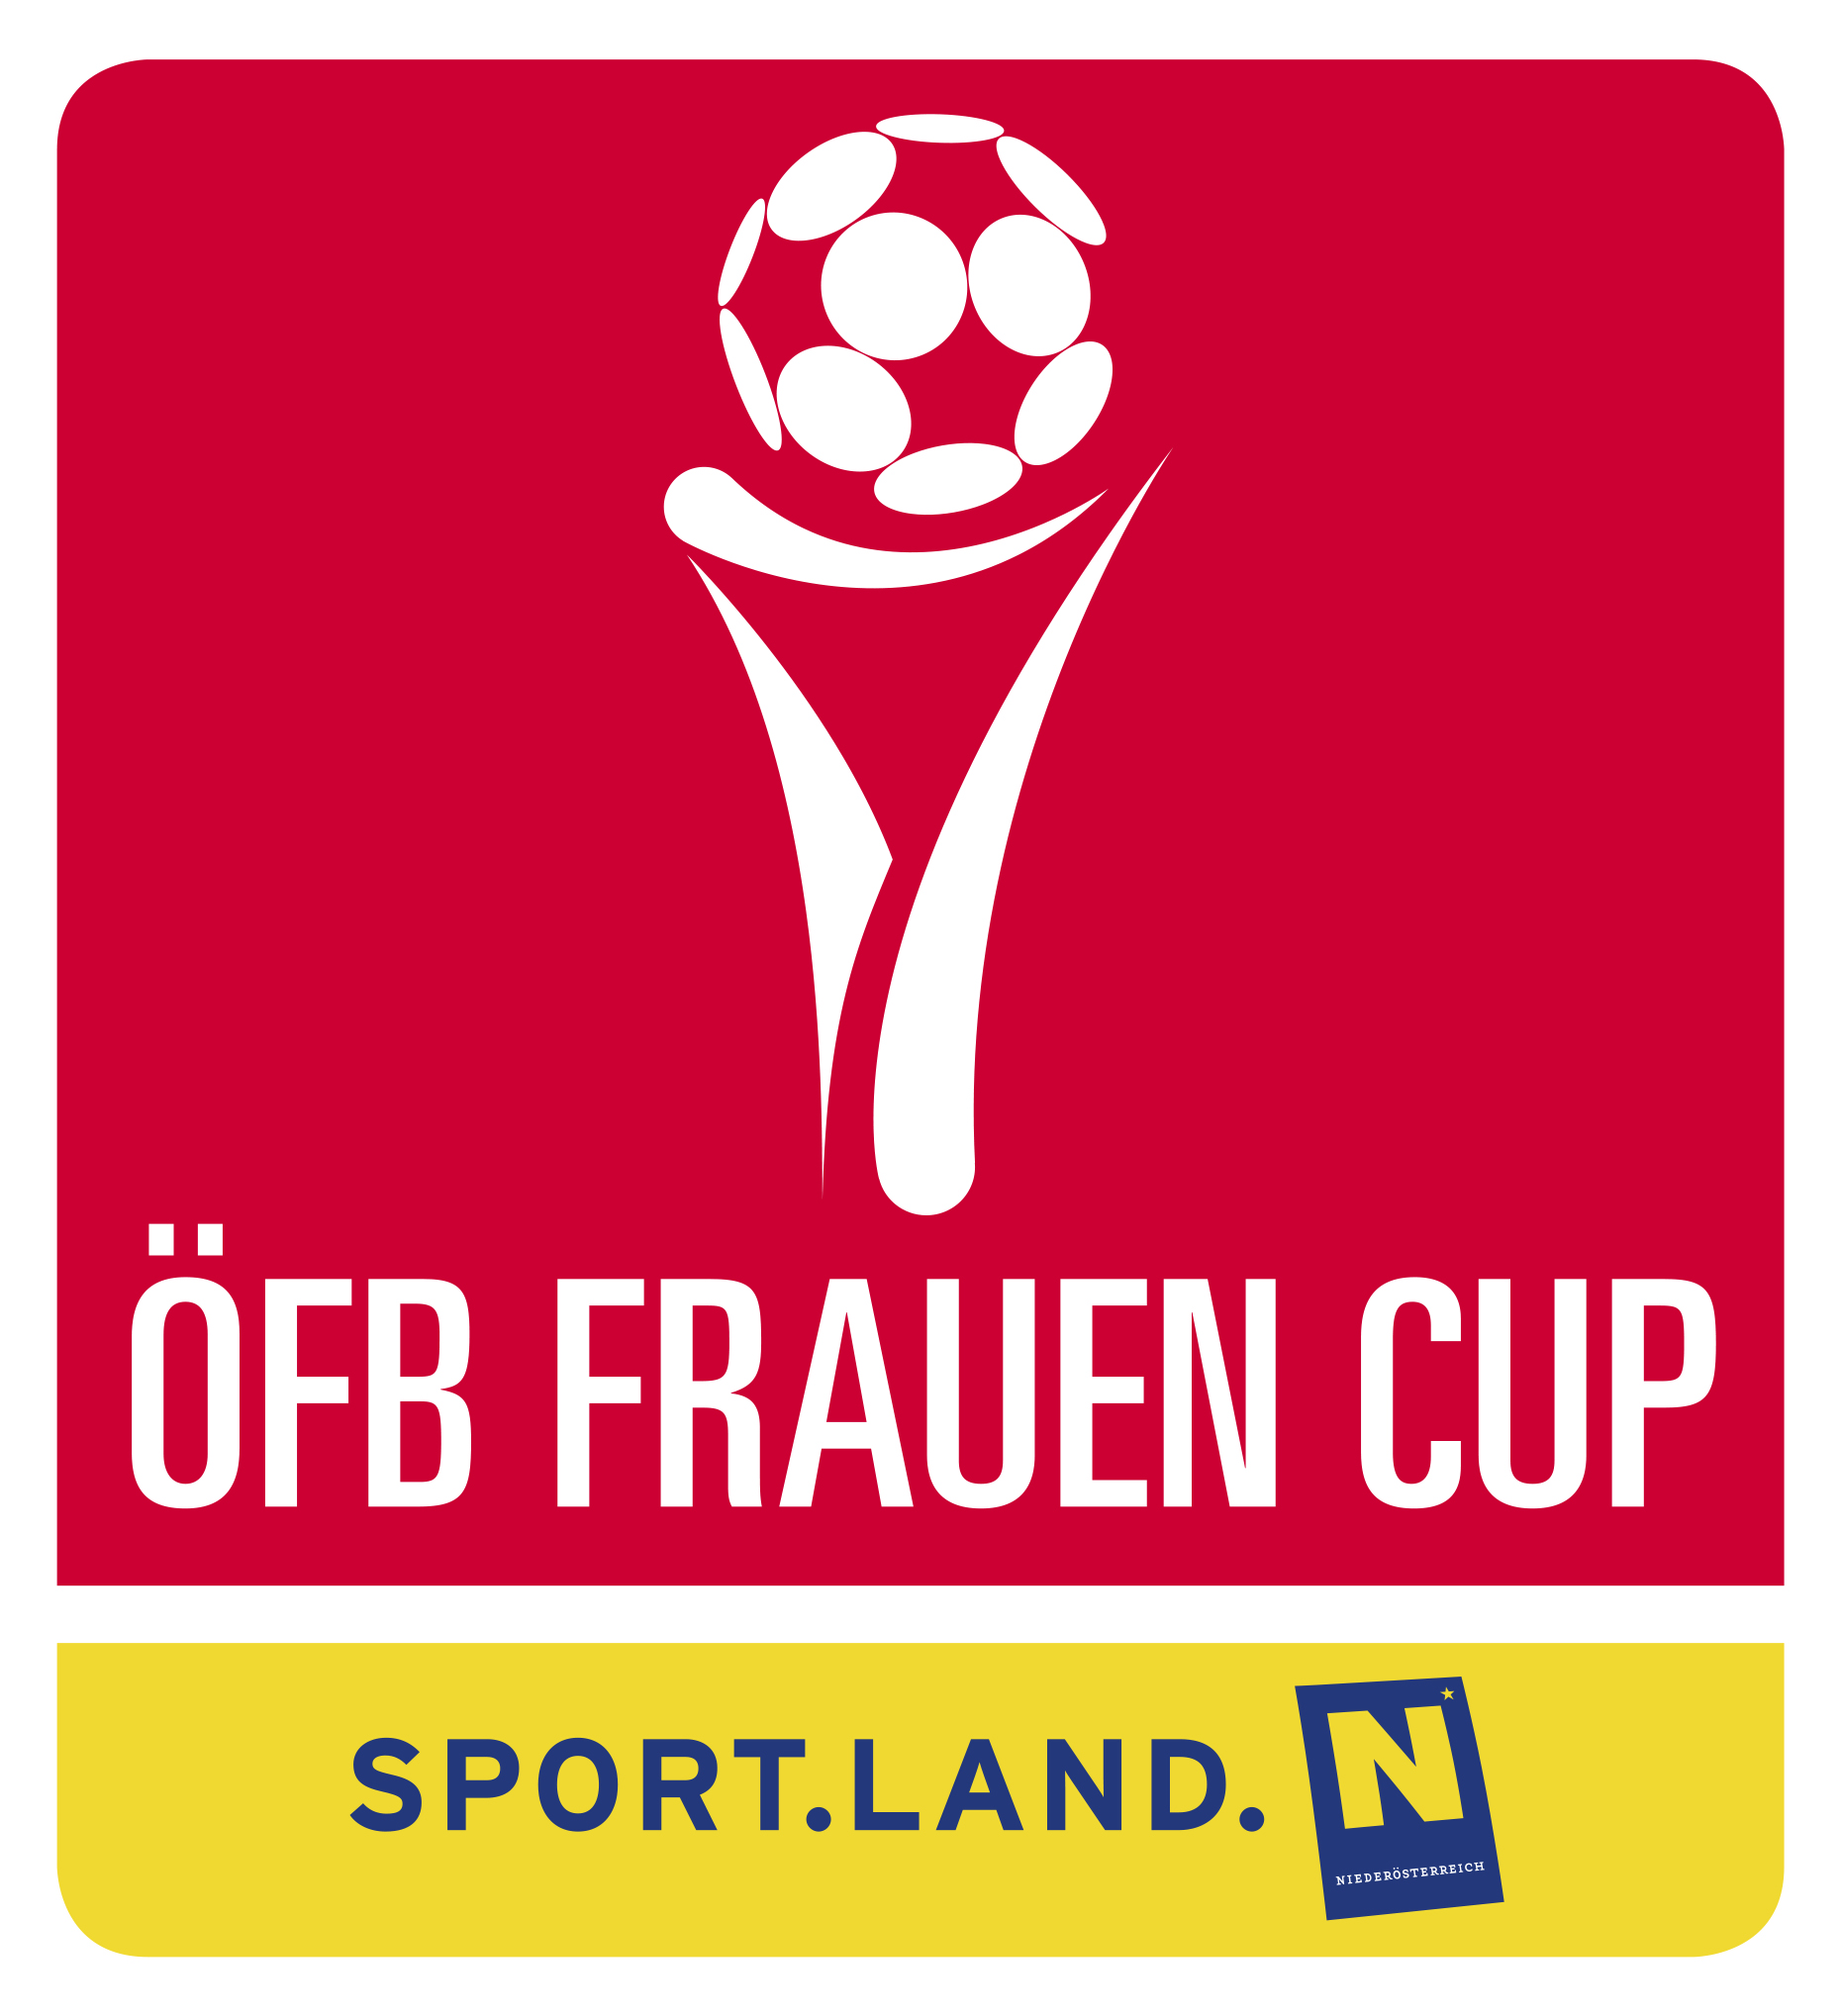 Cúp bóng đá nữ Áo – Giải đấu hàng đầu của bóng đá nữ Áo